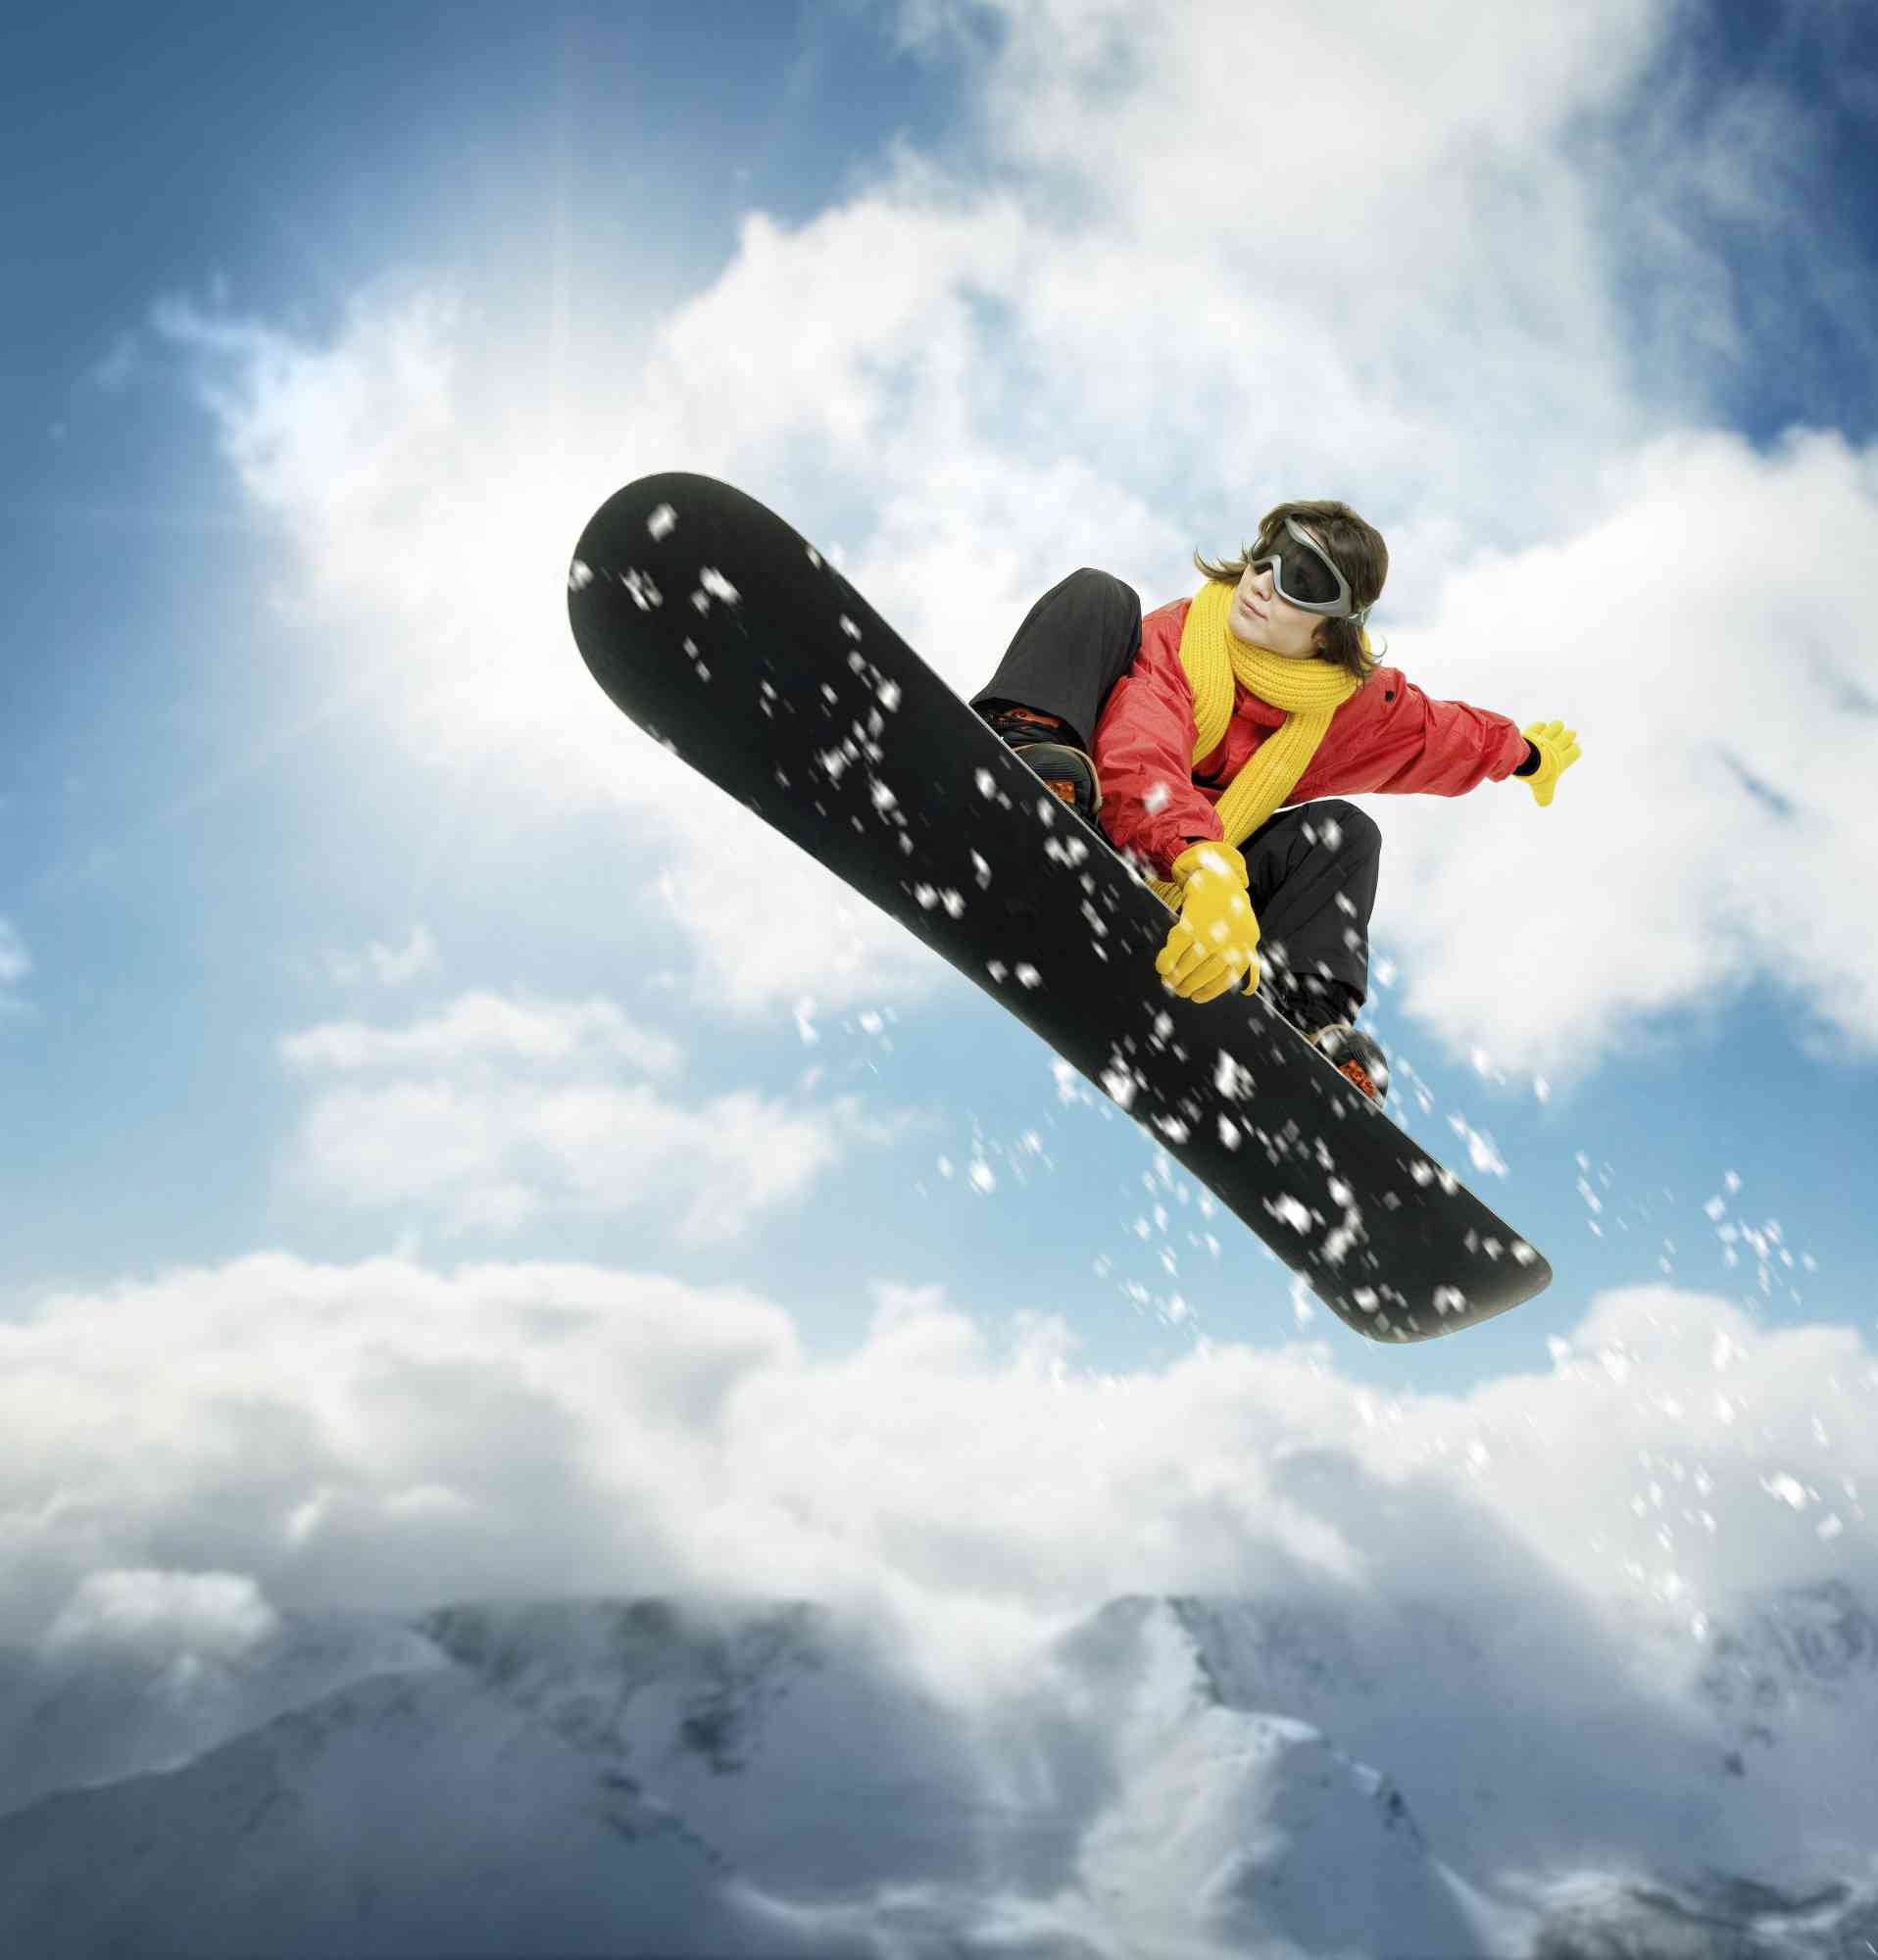 Snowboard 7.5' x 8' (2,29m x 2,44m)